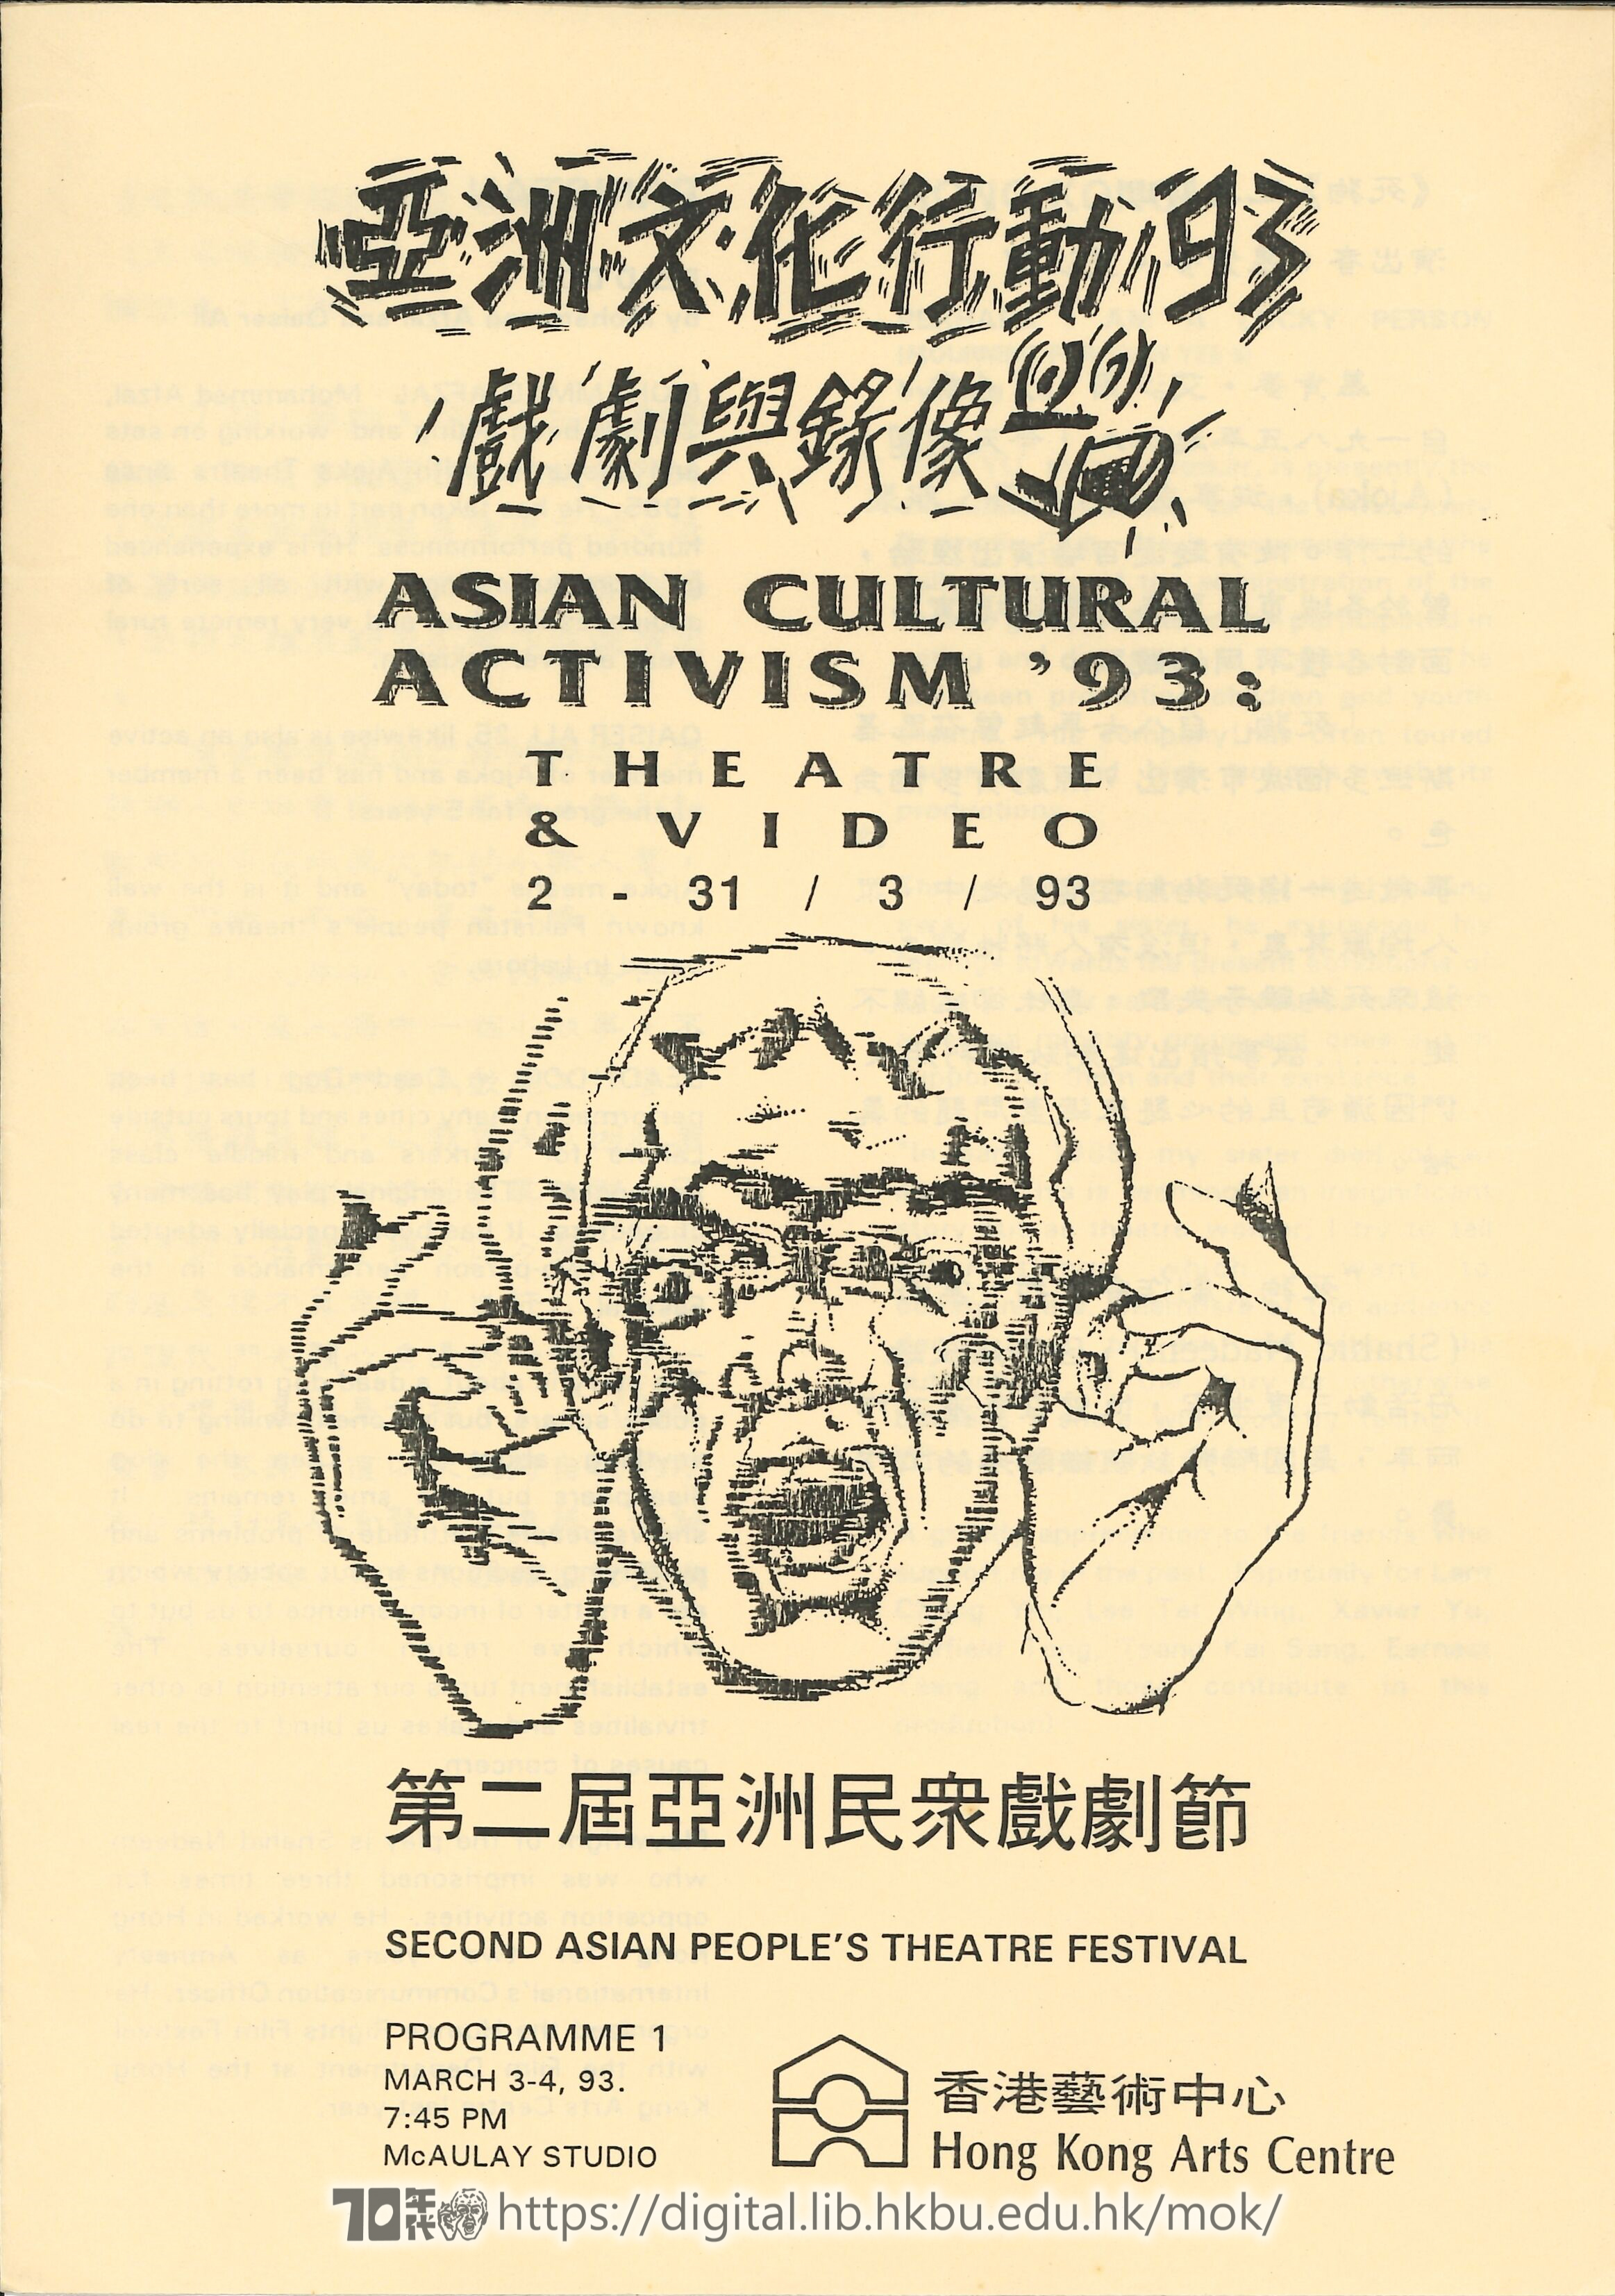 第二屆亞洲民眾戲劇節  亞洲文化行動93 戲劇與錄像 (節目-1）第二届亞洲民衆戲劇節 場刊  